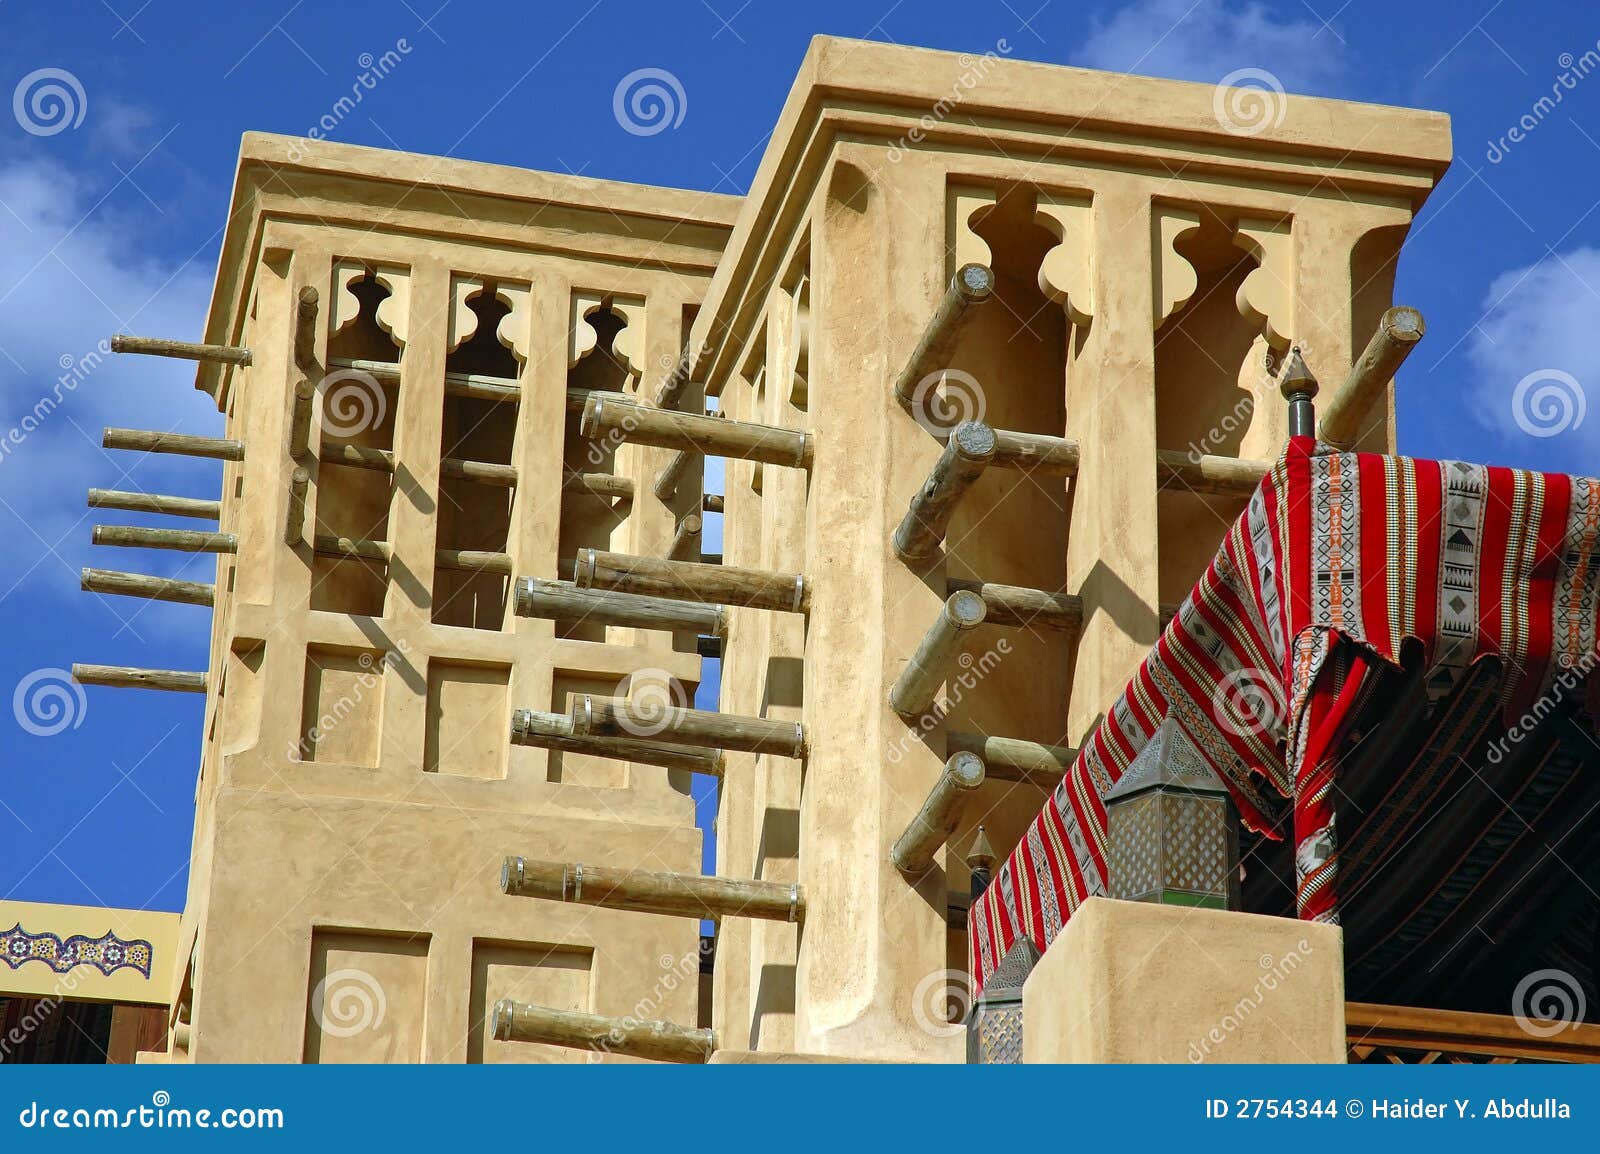 Windtowers. Strutture storiche tradizionali arabe basate per principi di convezione dell'aria, per contribuire a mantenere l'interiore di una costruzione freddo